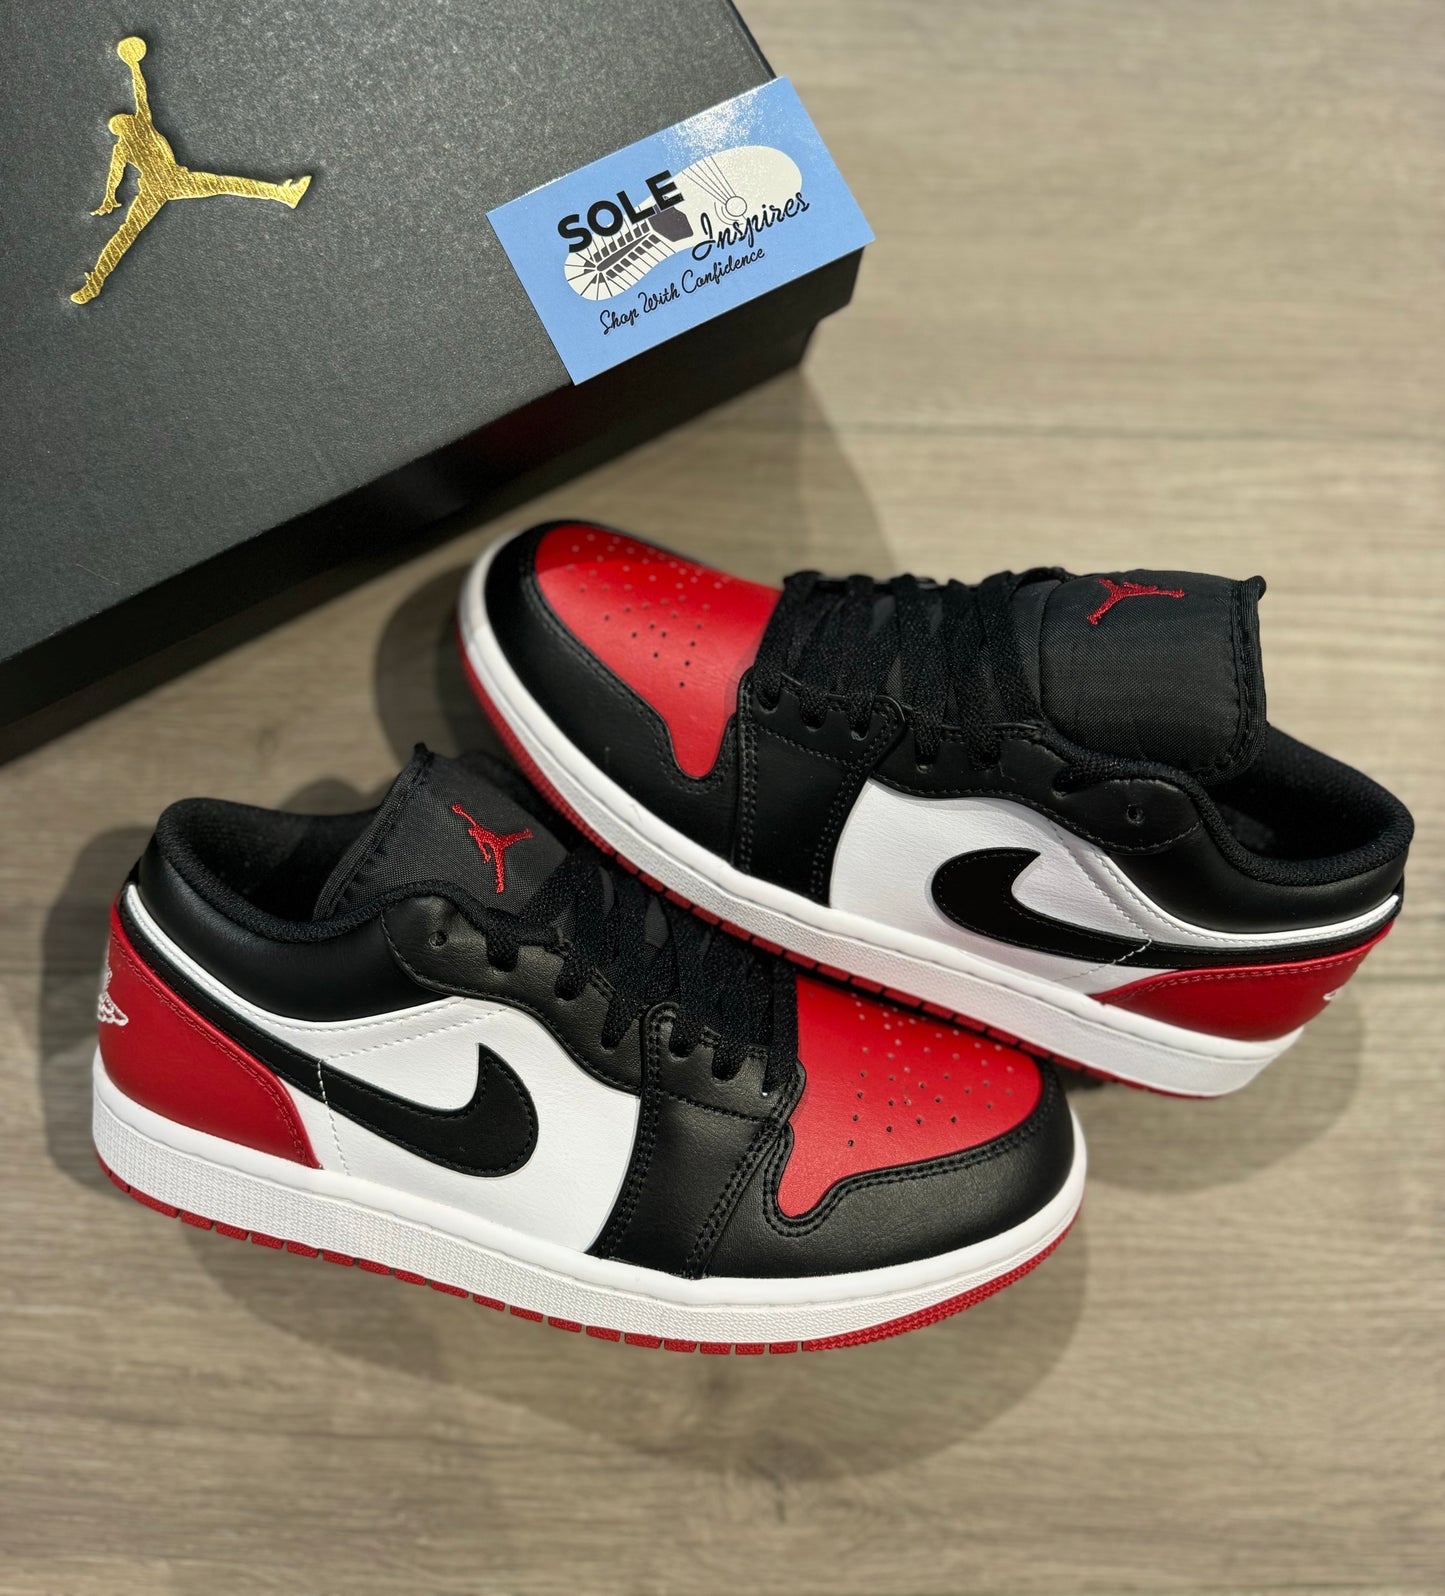 Air Jordan 1 Low “Bred Toe Low 2.0”